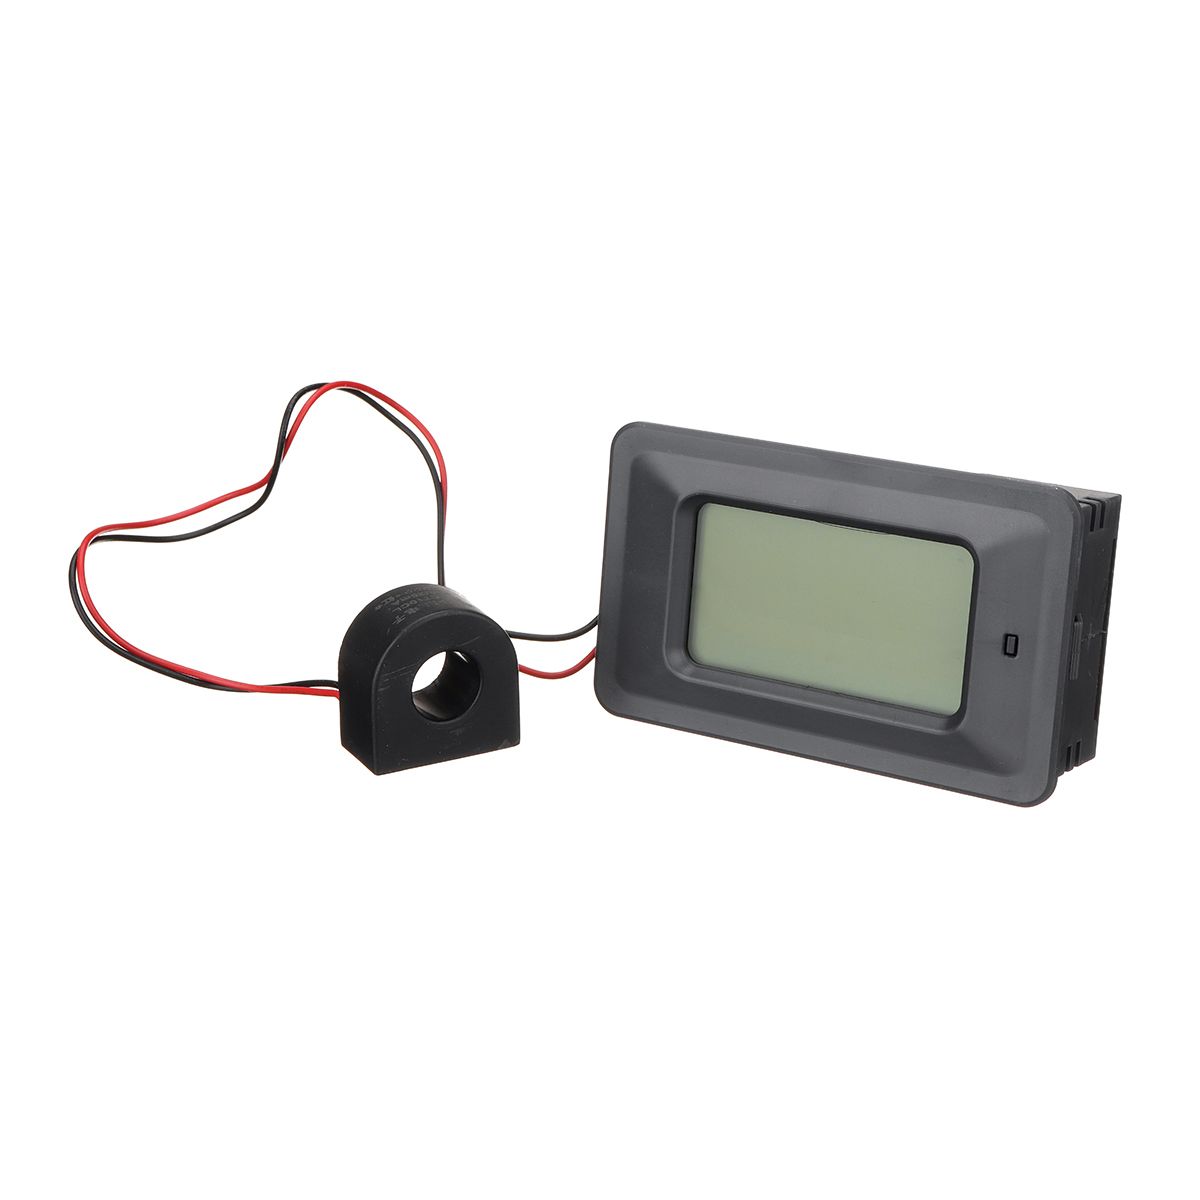 100A-Digital-LED-Panel-Power-Monitor-Power-Energy-Voltmeter-Ammeter-Meter-Tester-1262884